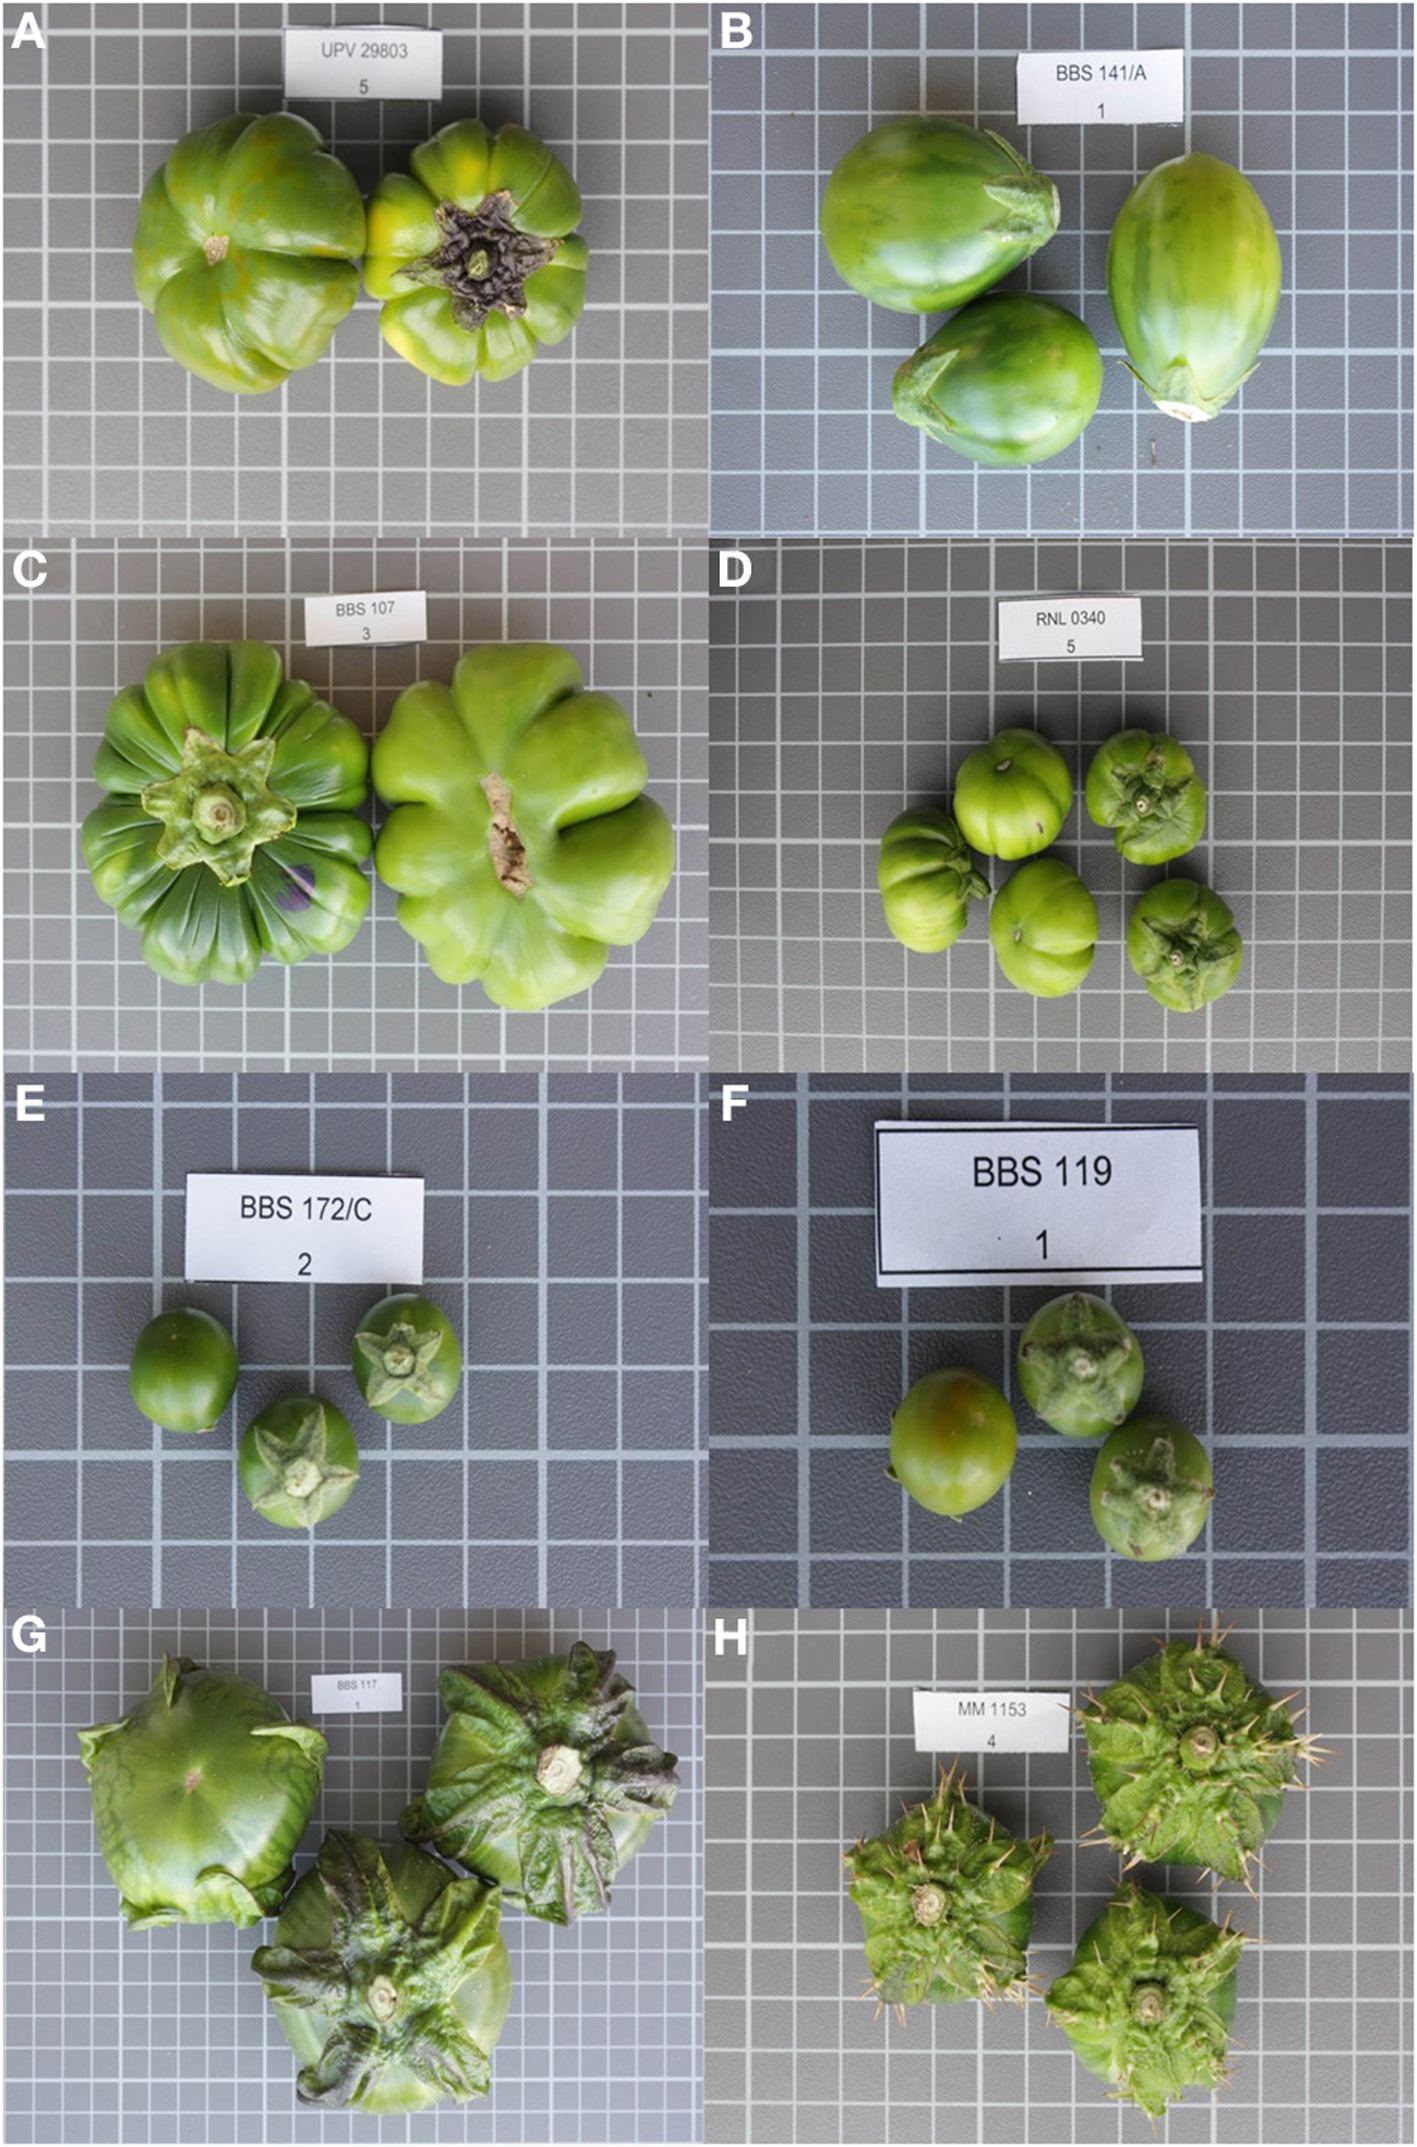 Solanum macrocarpon L . ) and Scarlet ( Solanum aethiopicum L . )